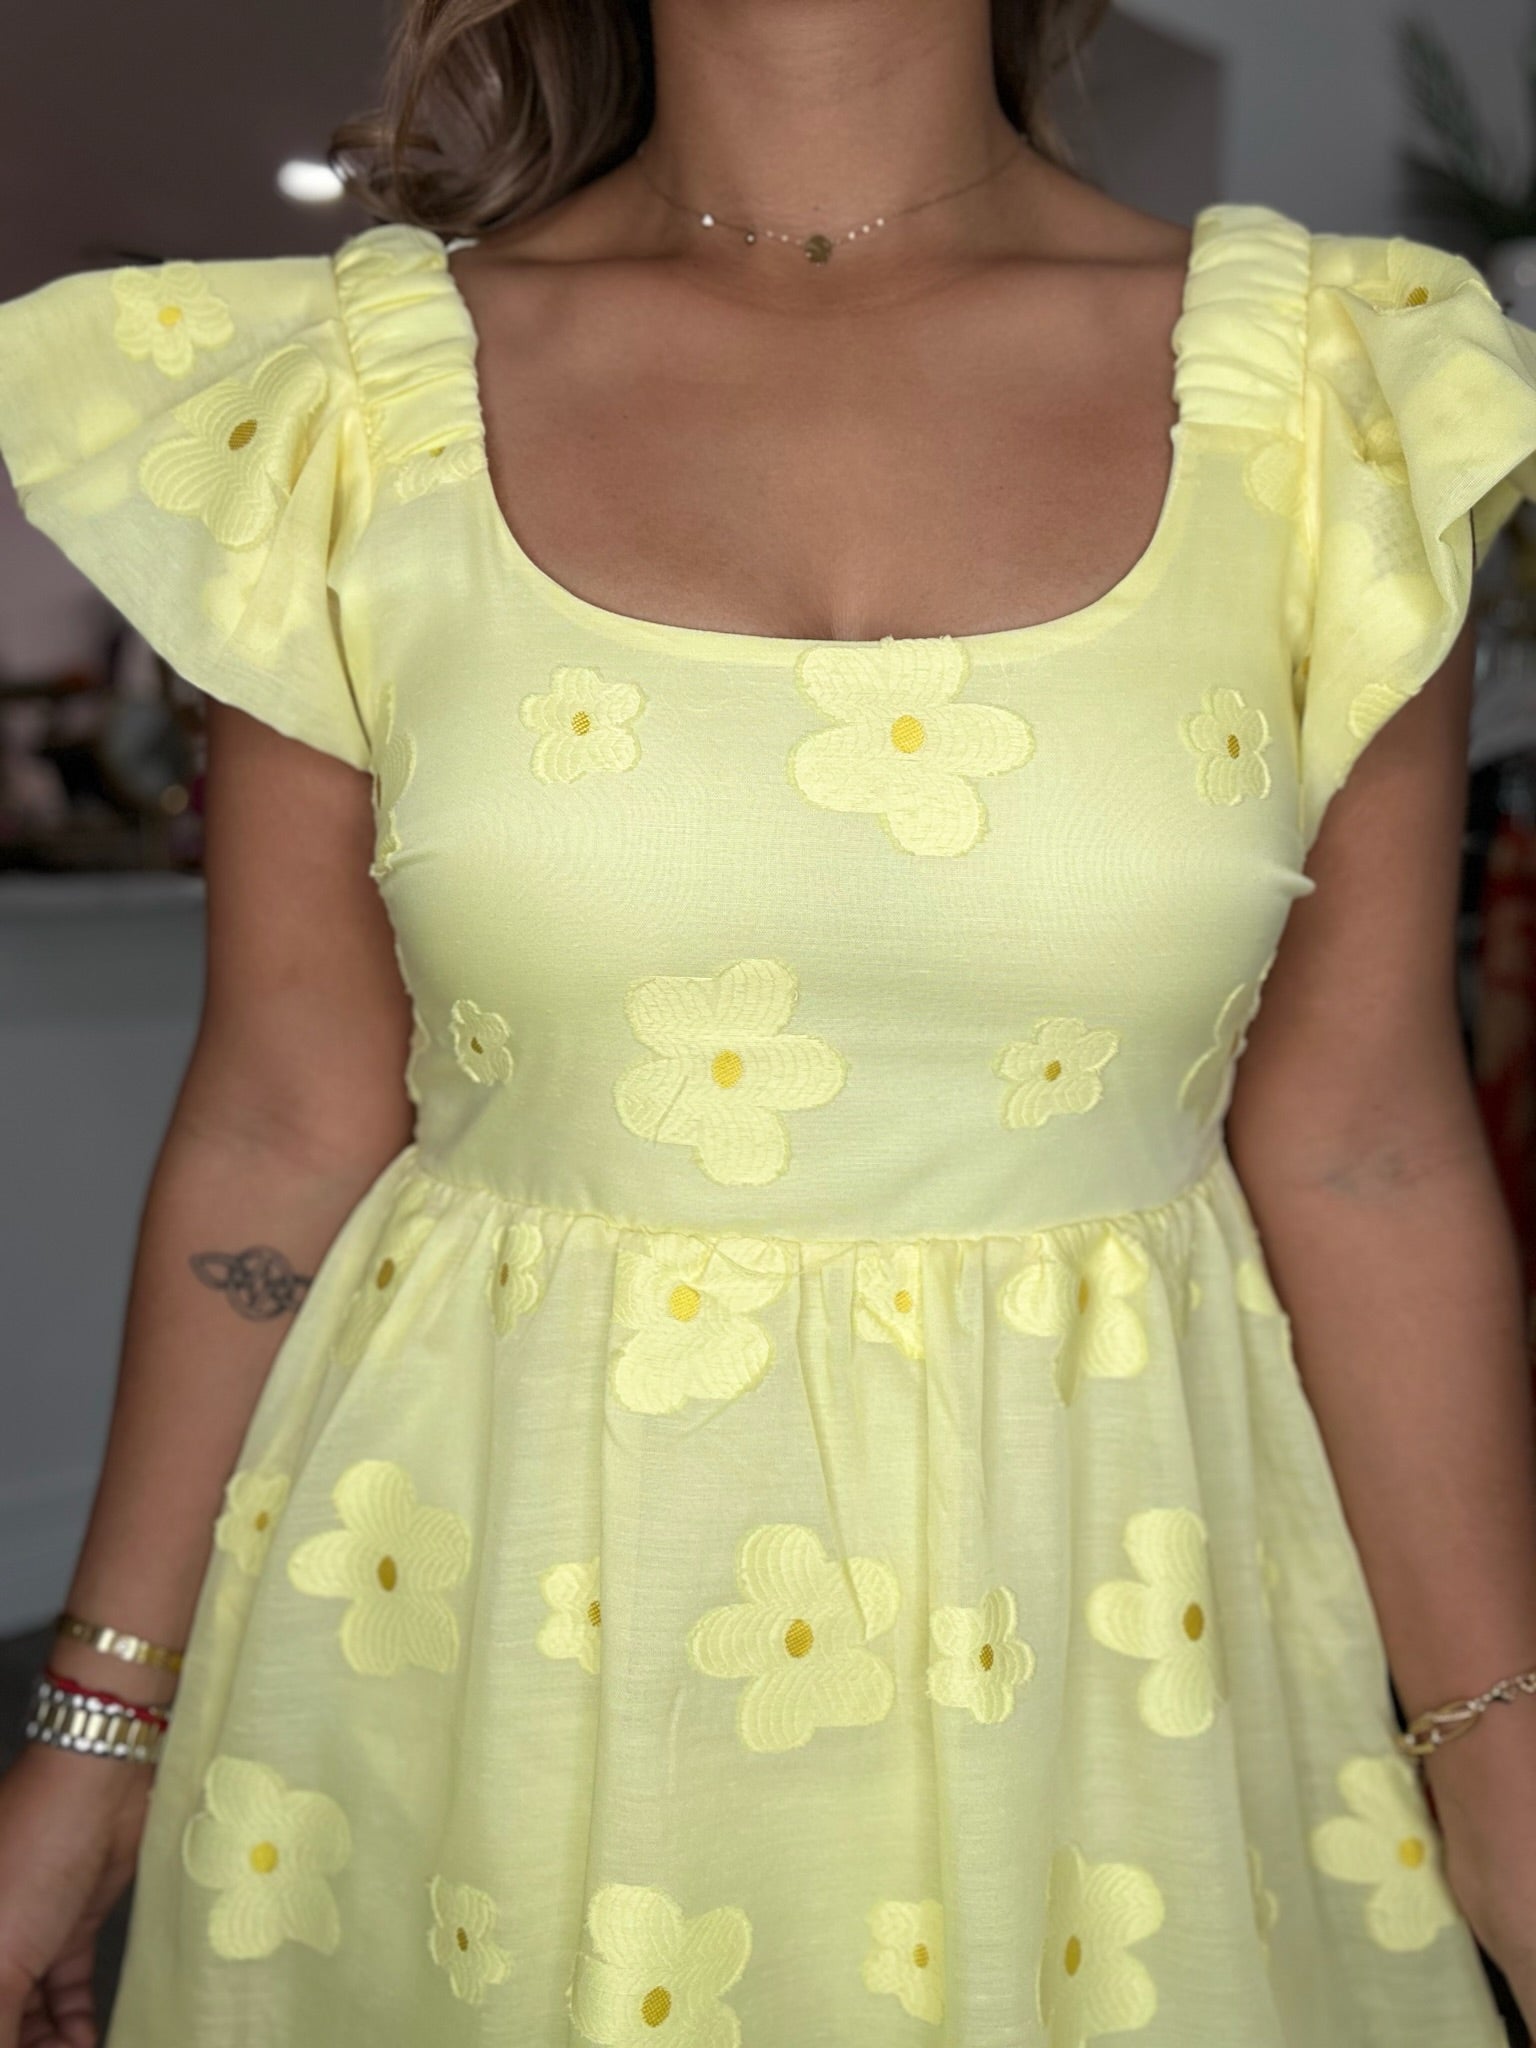 The Daisy Mini Dress